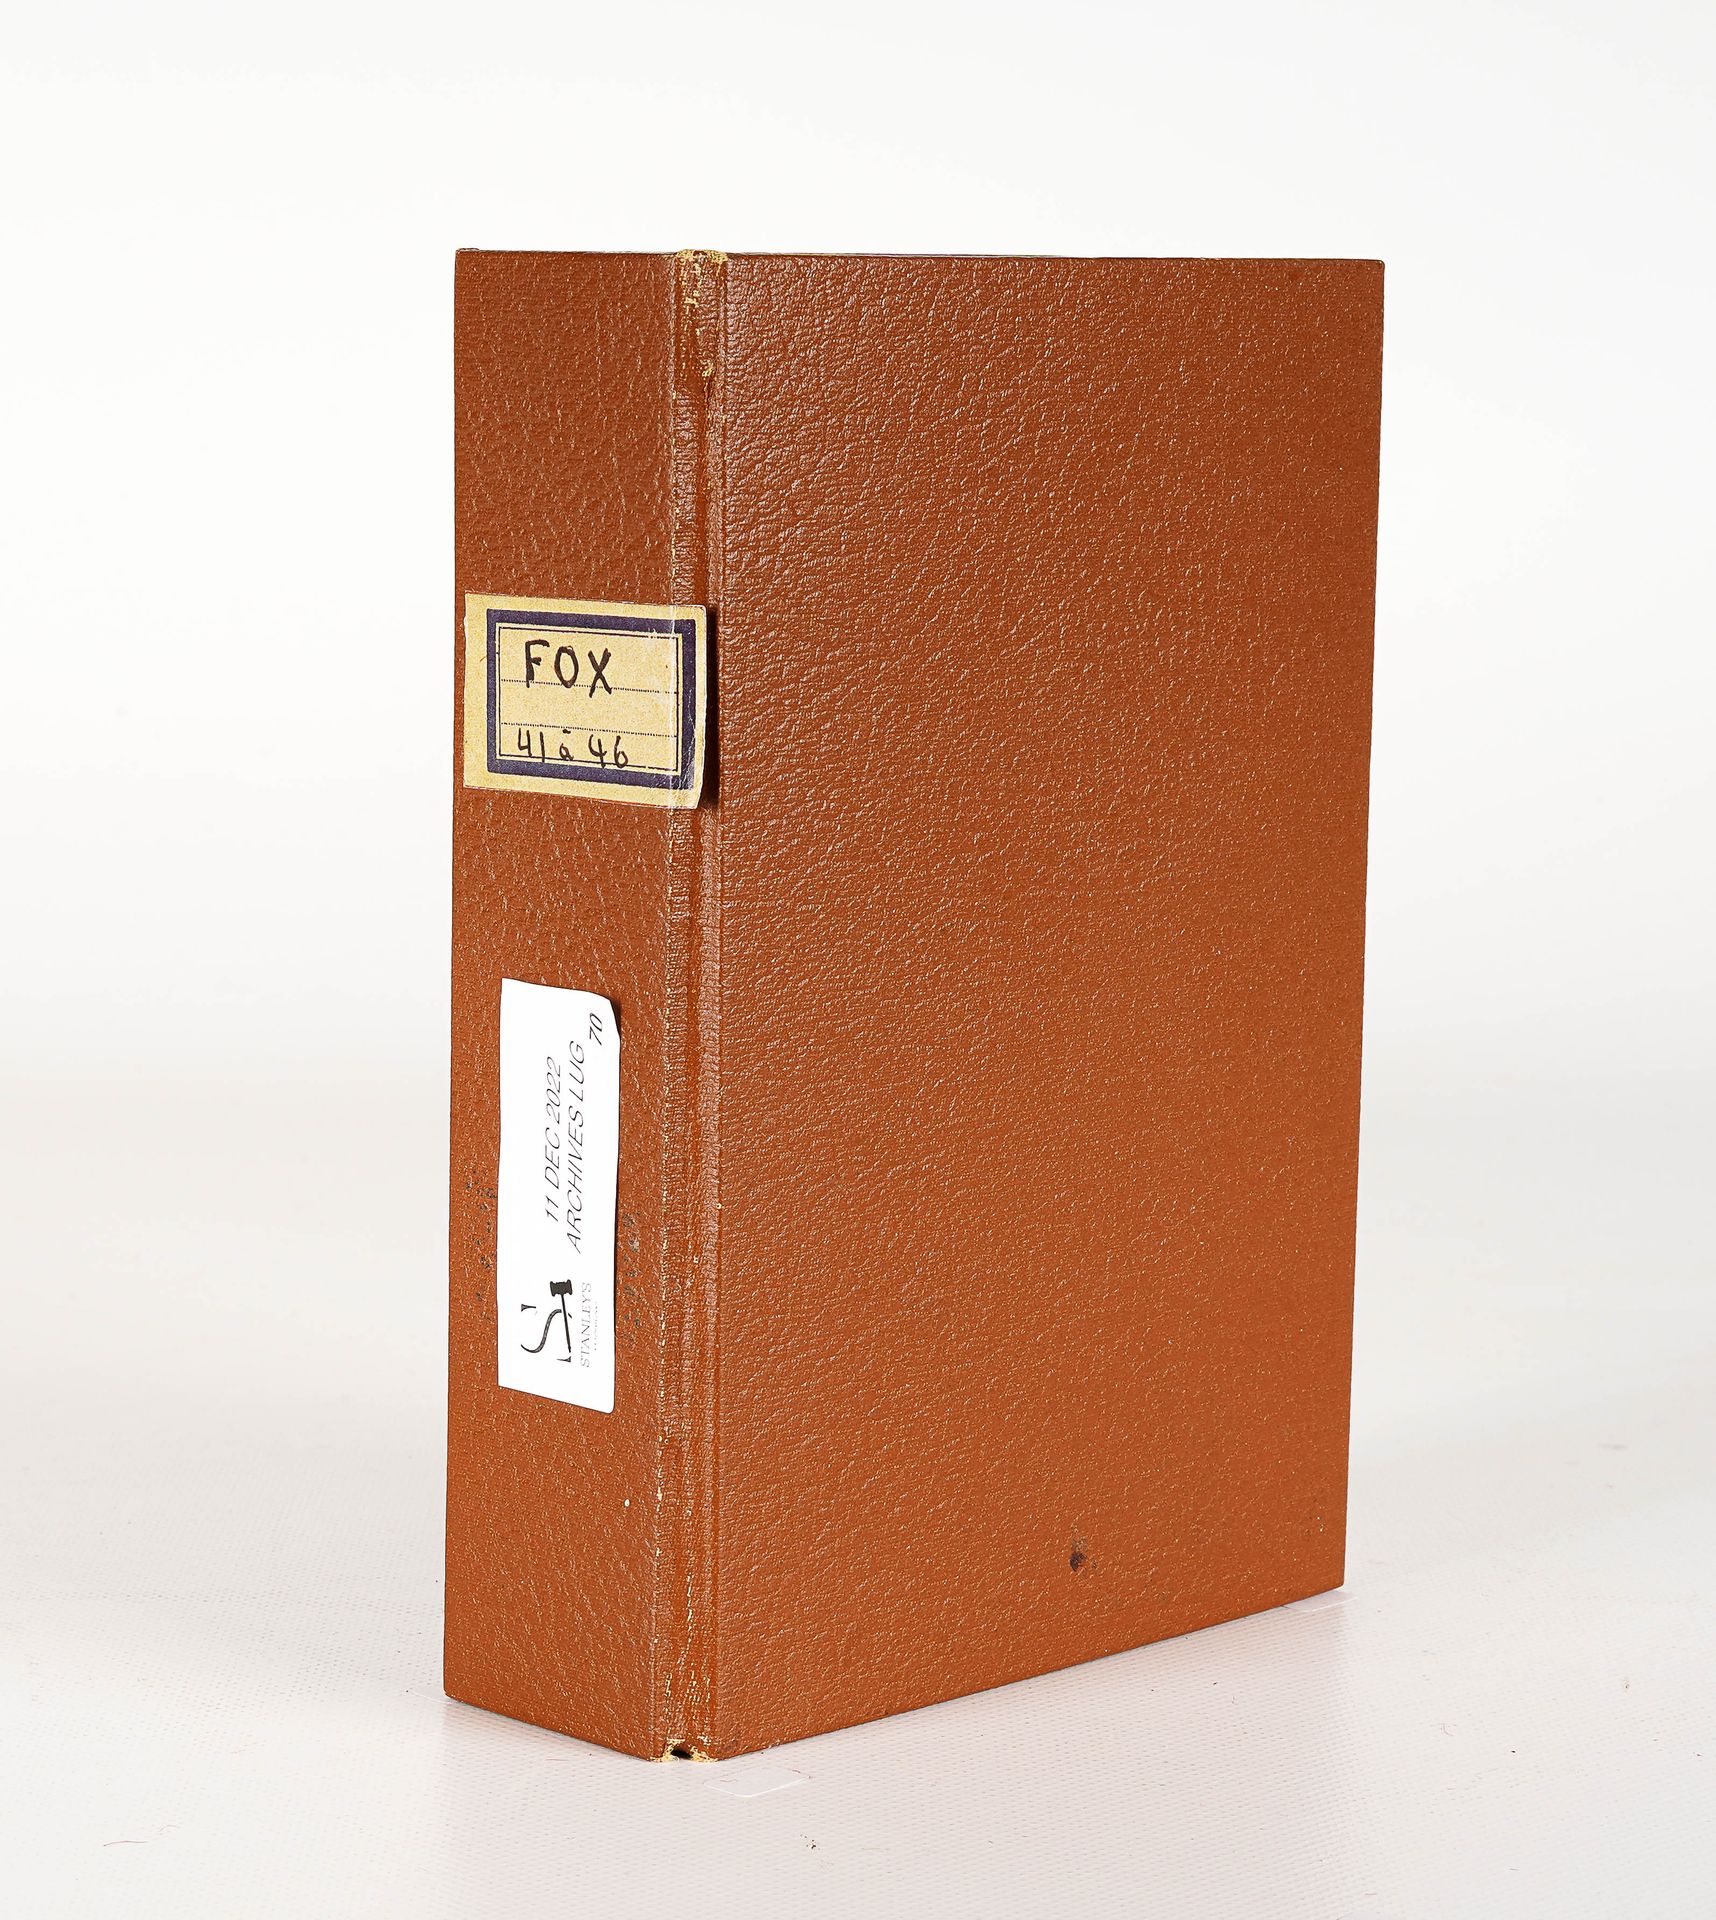 LUG SEMIC, ARCHIVES COMICS 有6个FOX编号41至46的活页夹，棕色人造皮革，尺寸为18.5 x 13厘米高。